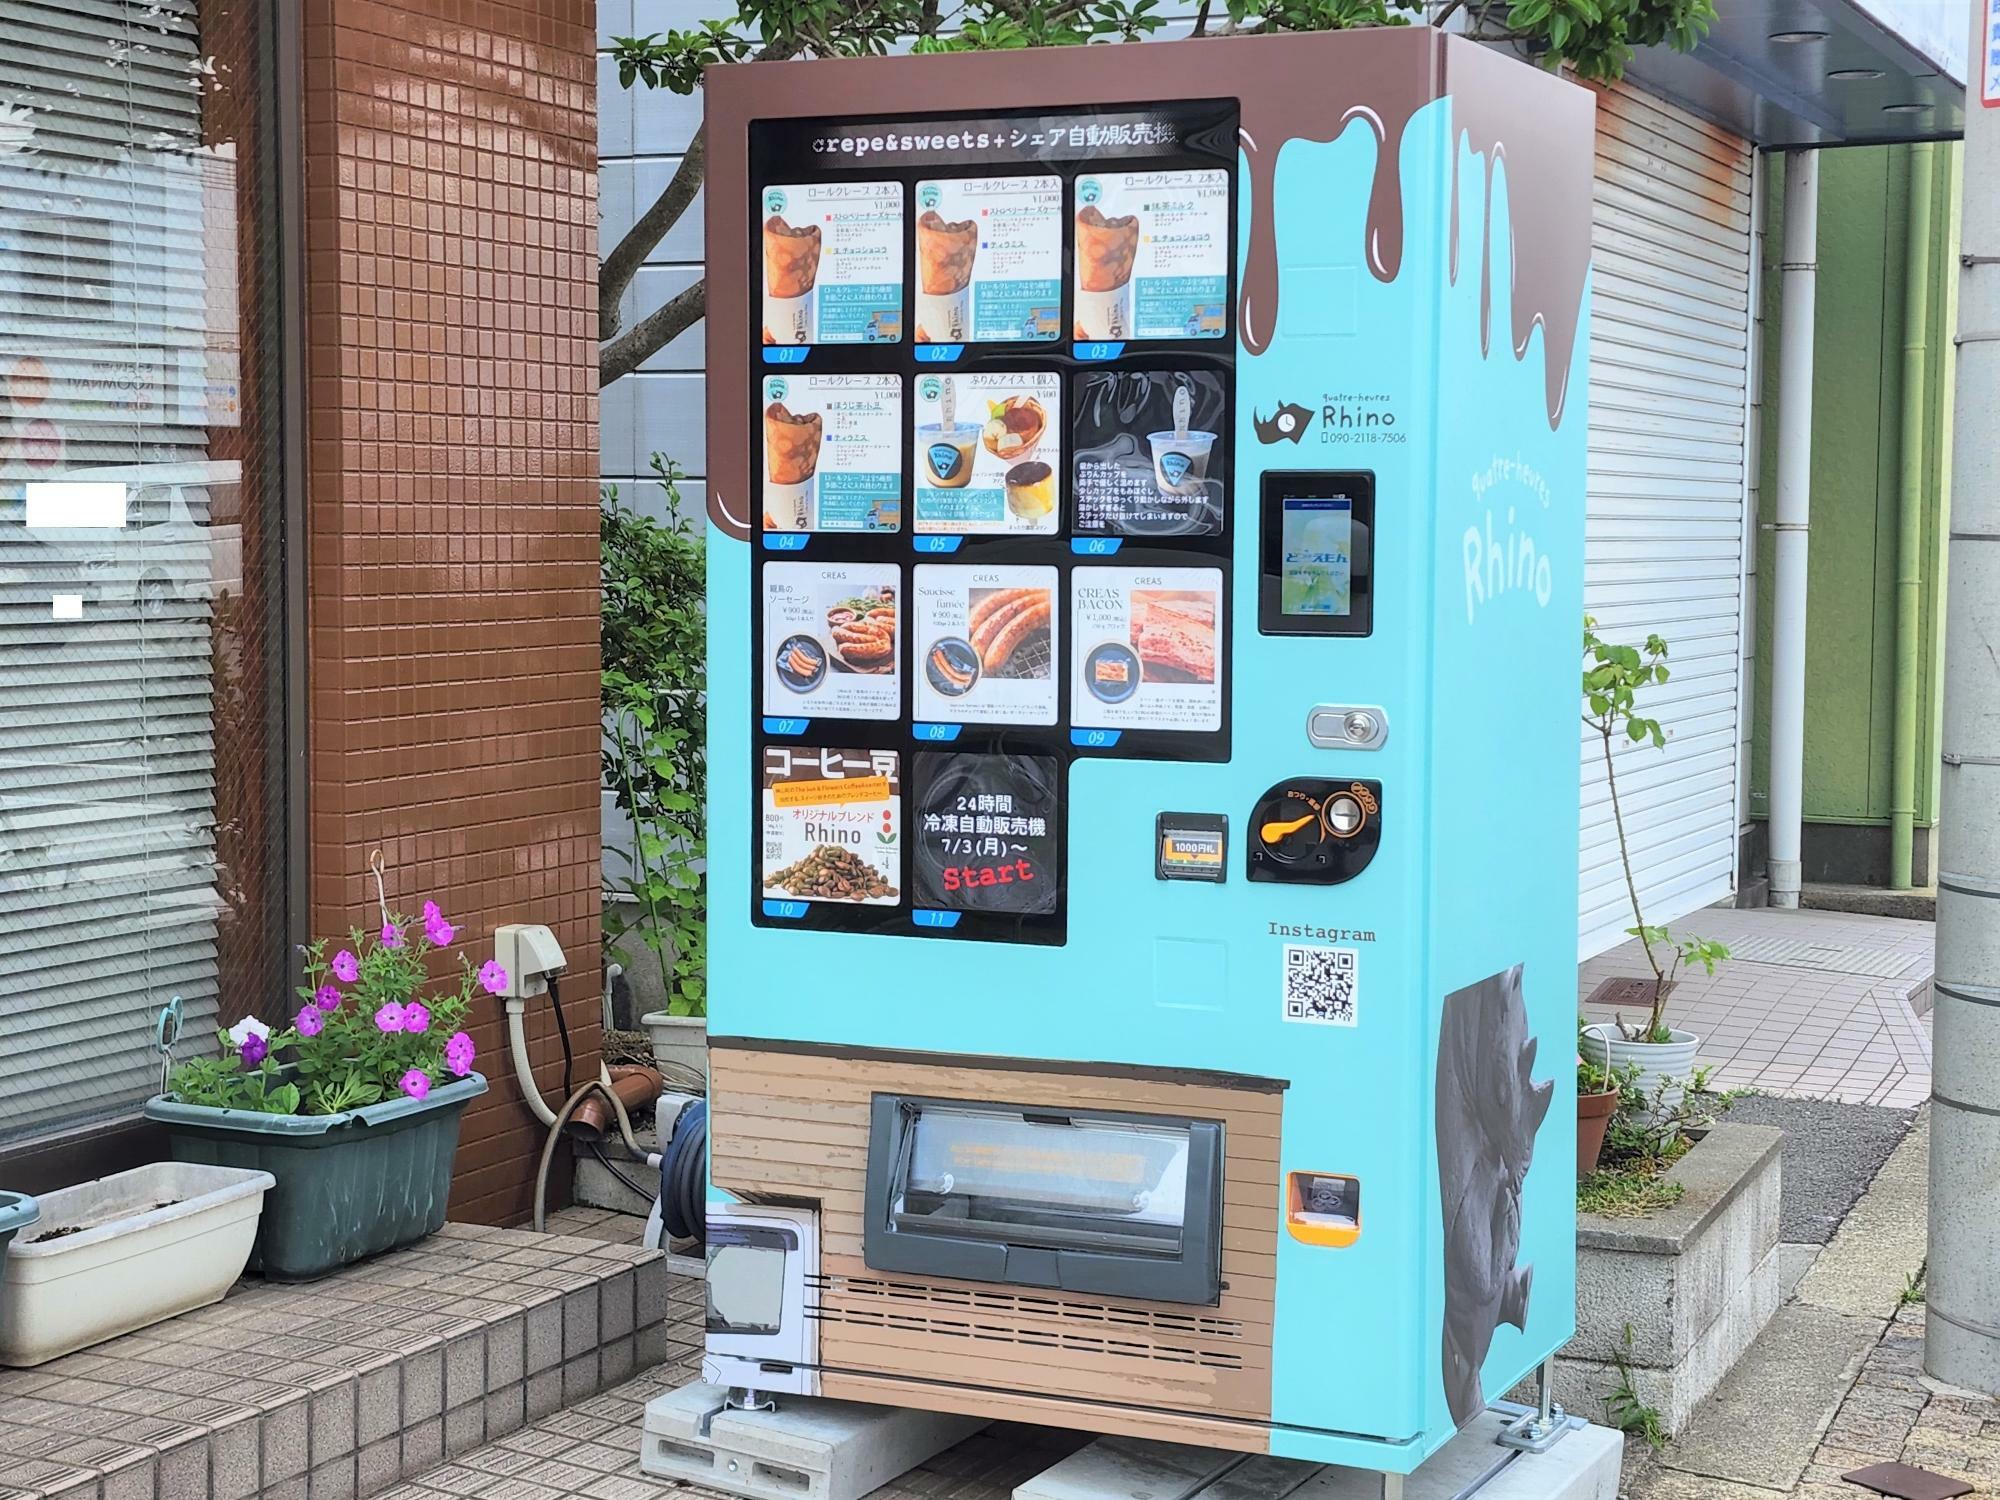 「キャトルールリノ」の冷凍自動販売機。